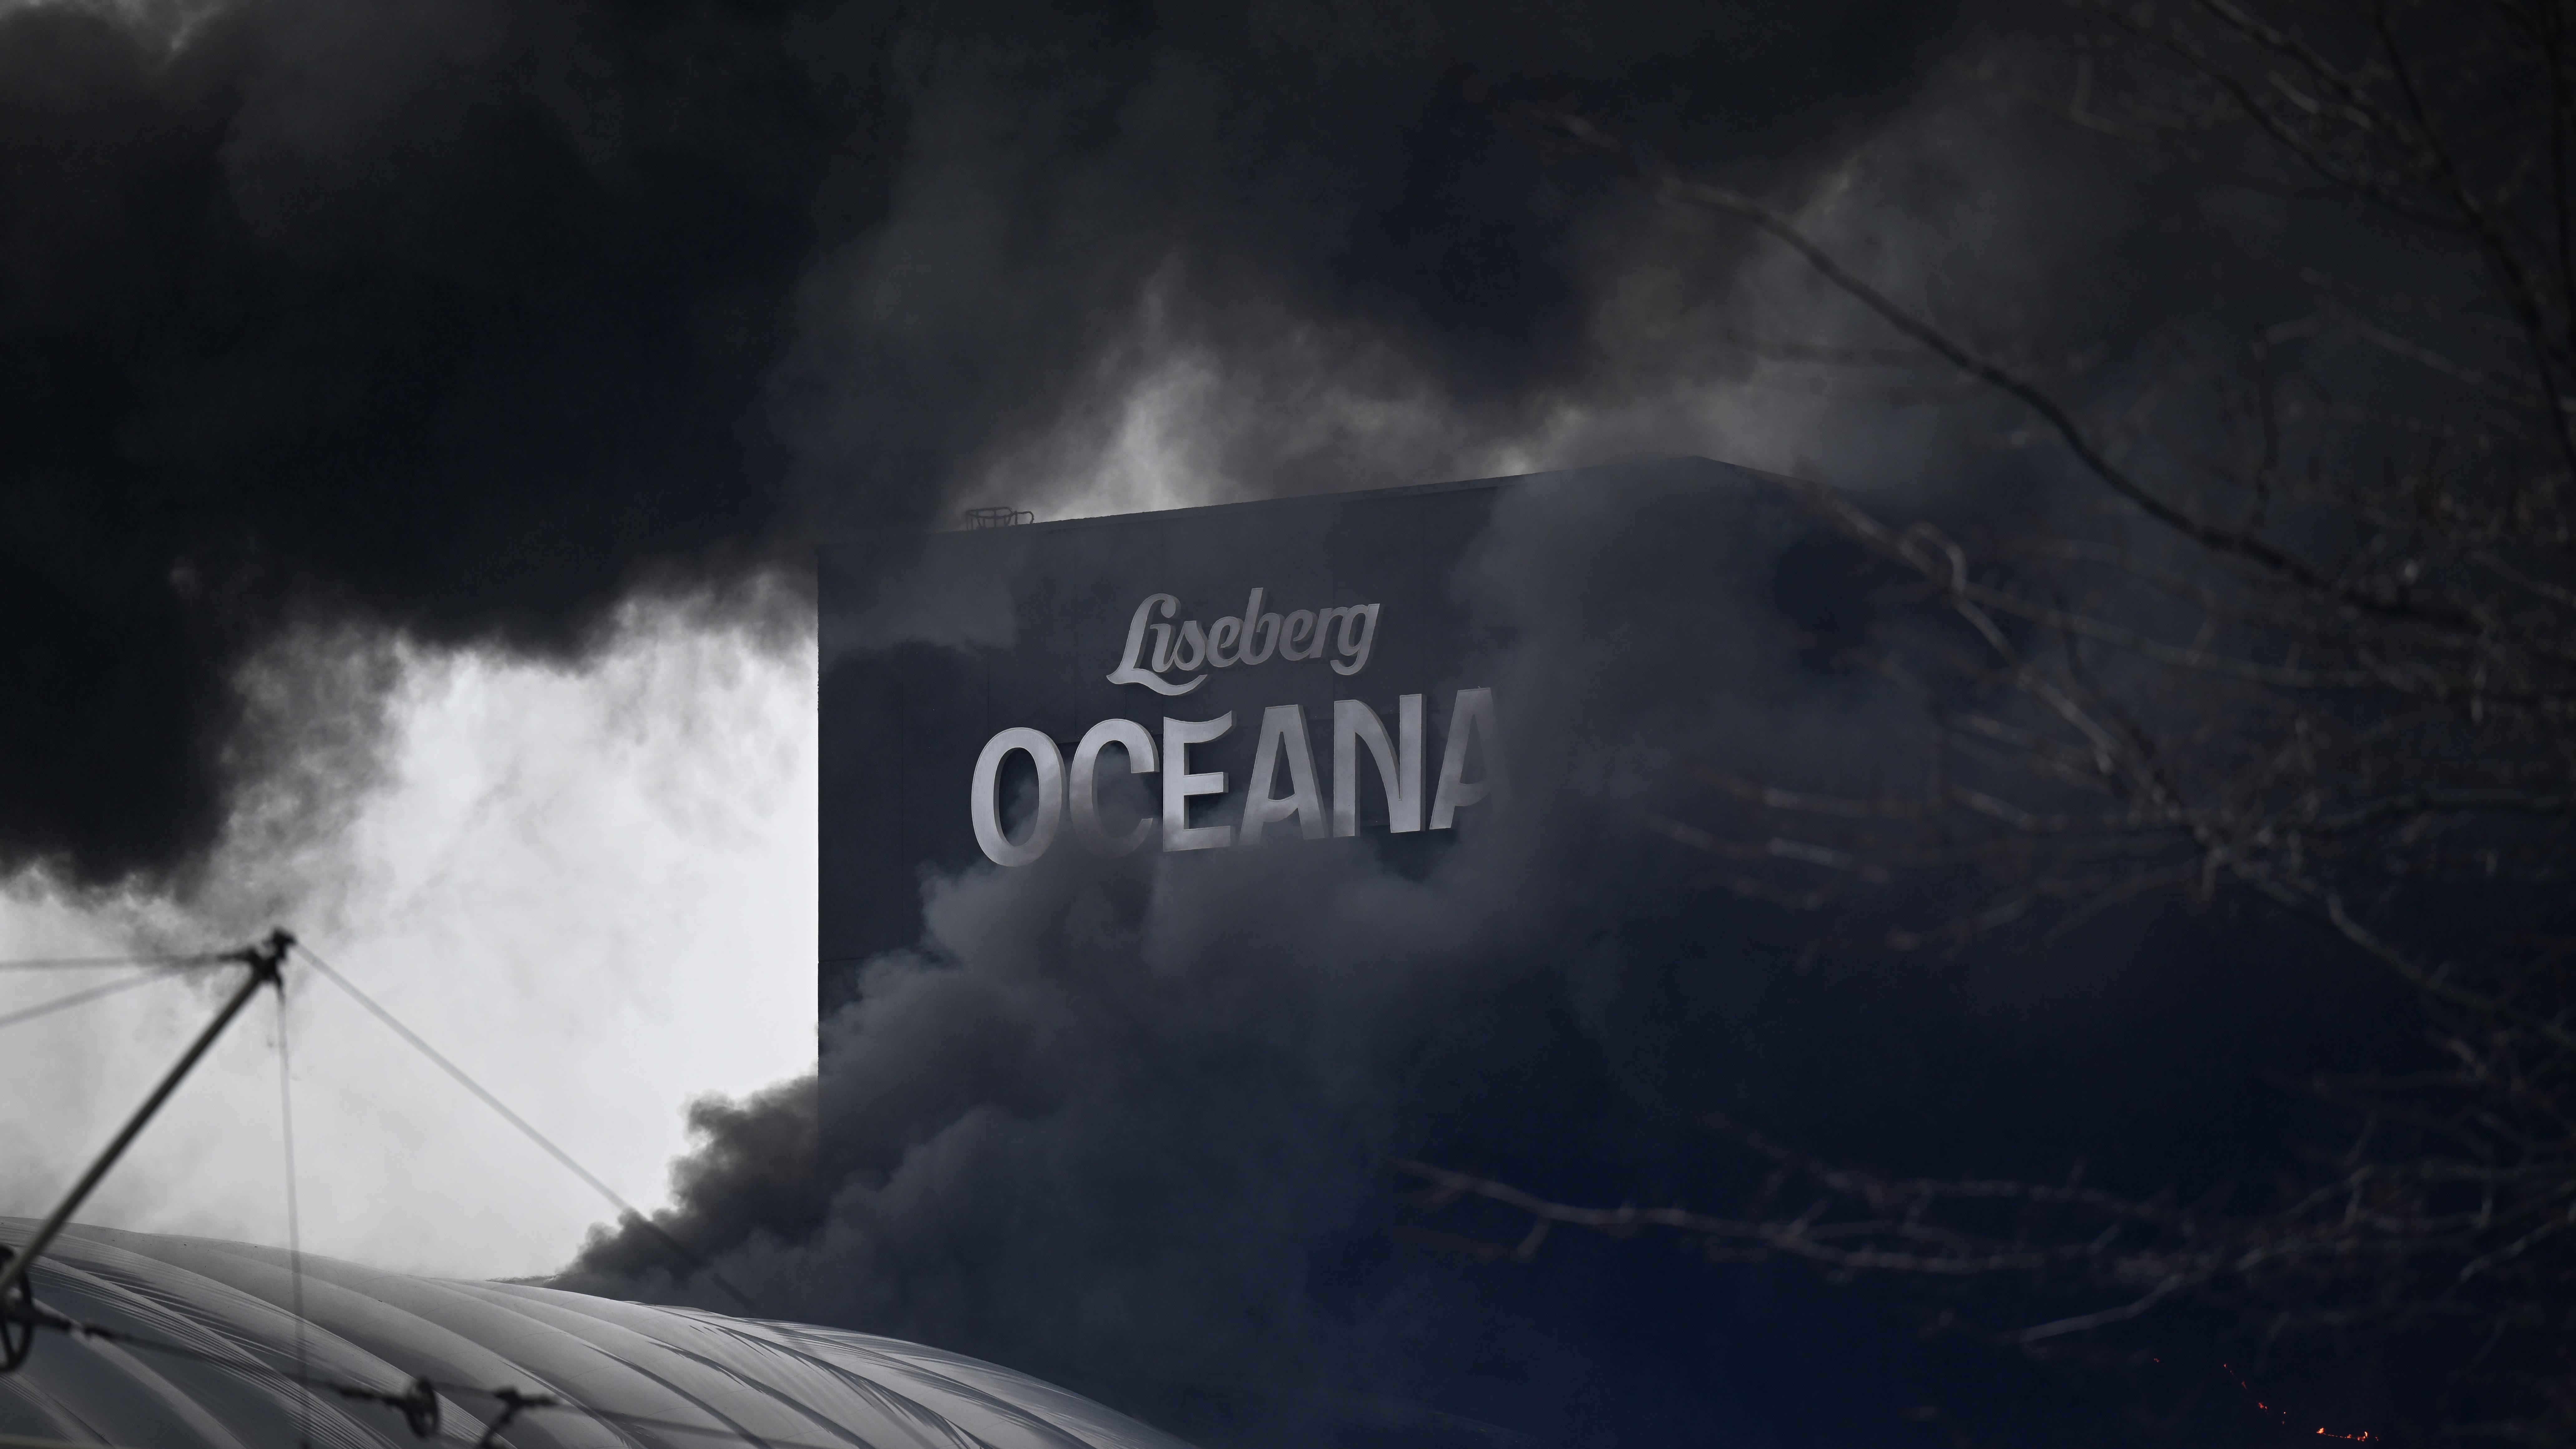 NCC i avtal med Liseberg – ska återuppbygga Oceana